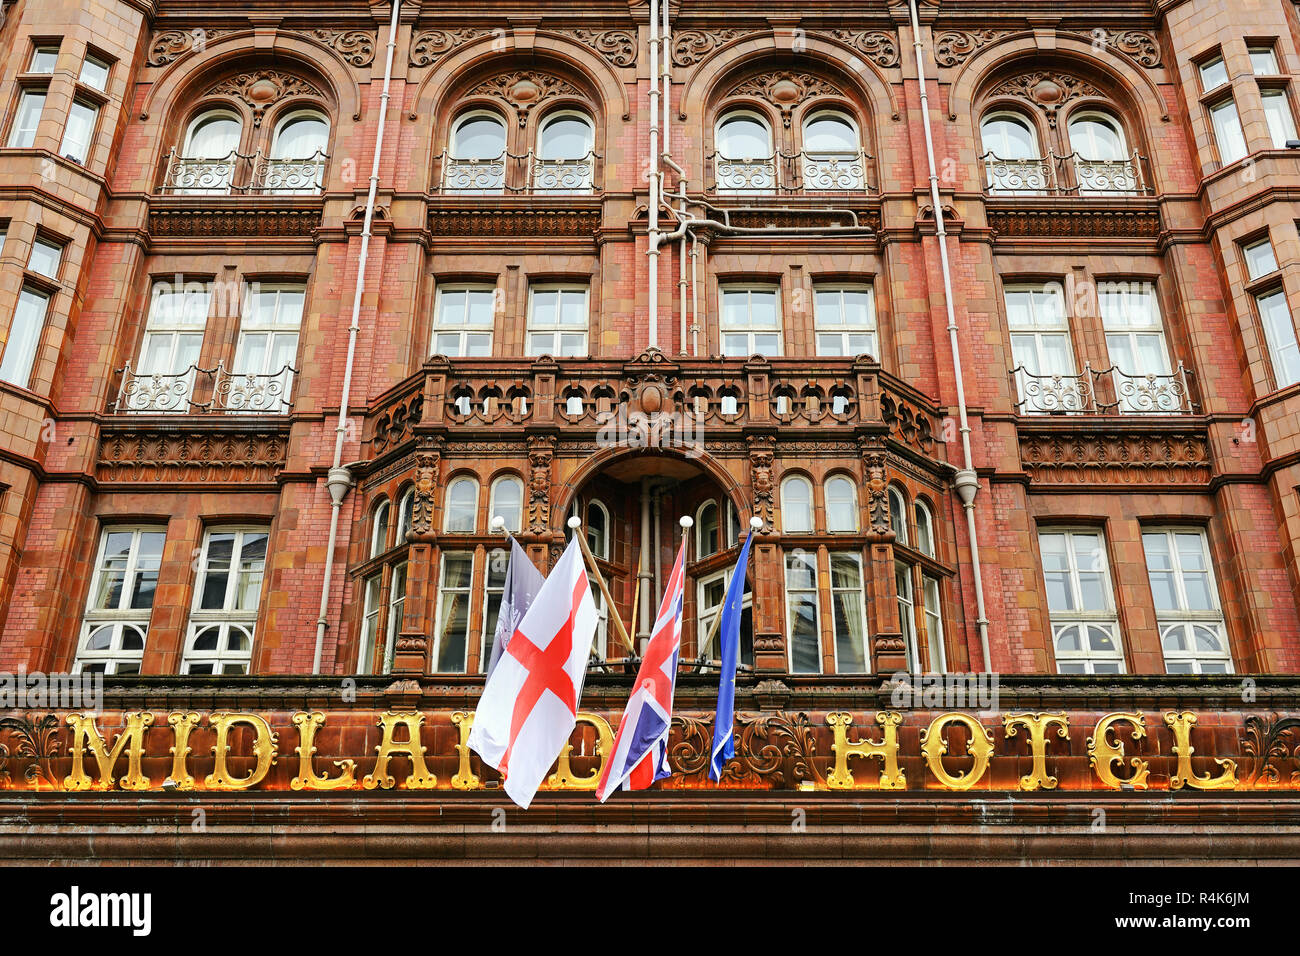 The Midland Hotel, Manchester, England, United Kingdom Stock Photo